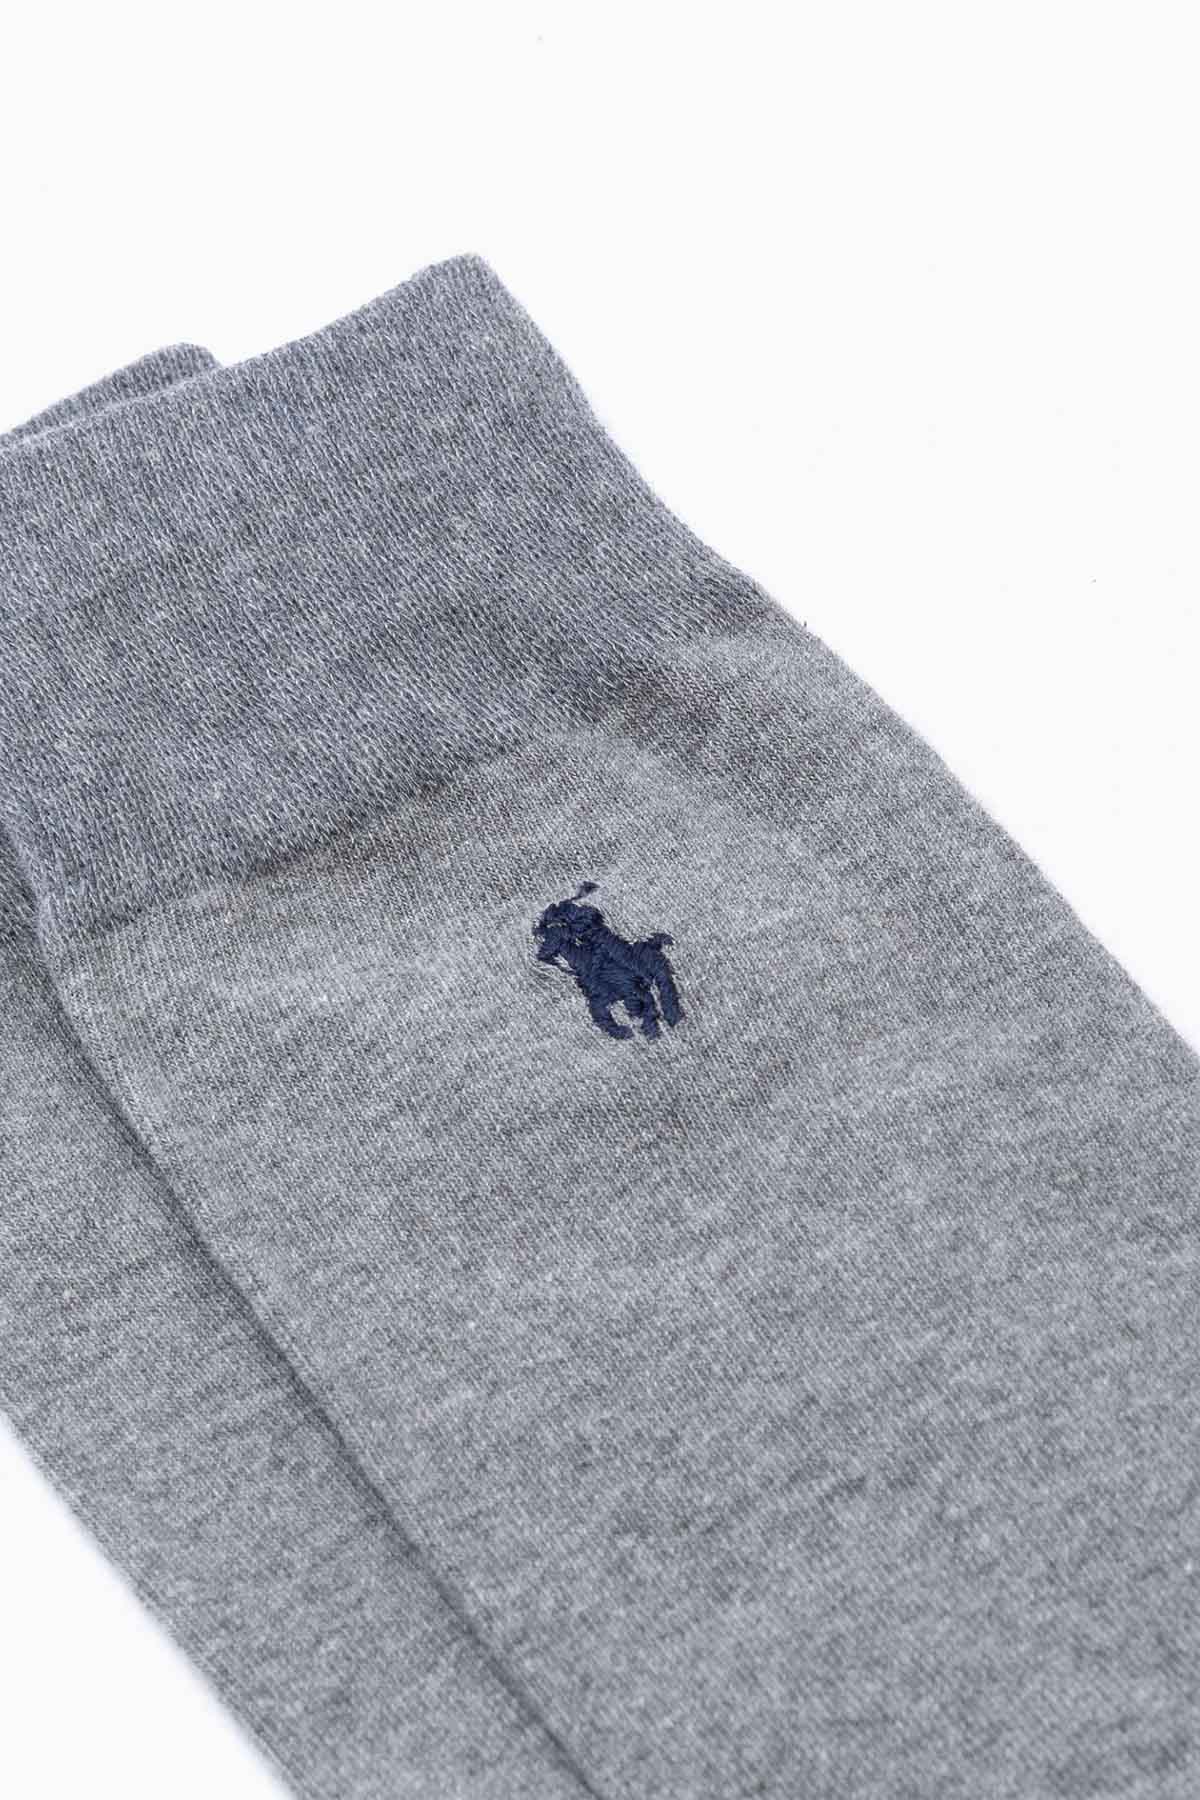 Polo Ralph Lauren Polo Bear 2'li Paket Çorap-Libas Trendy Fashion Store